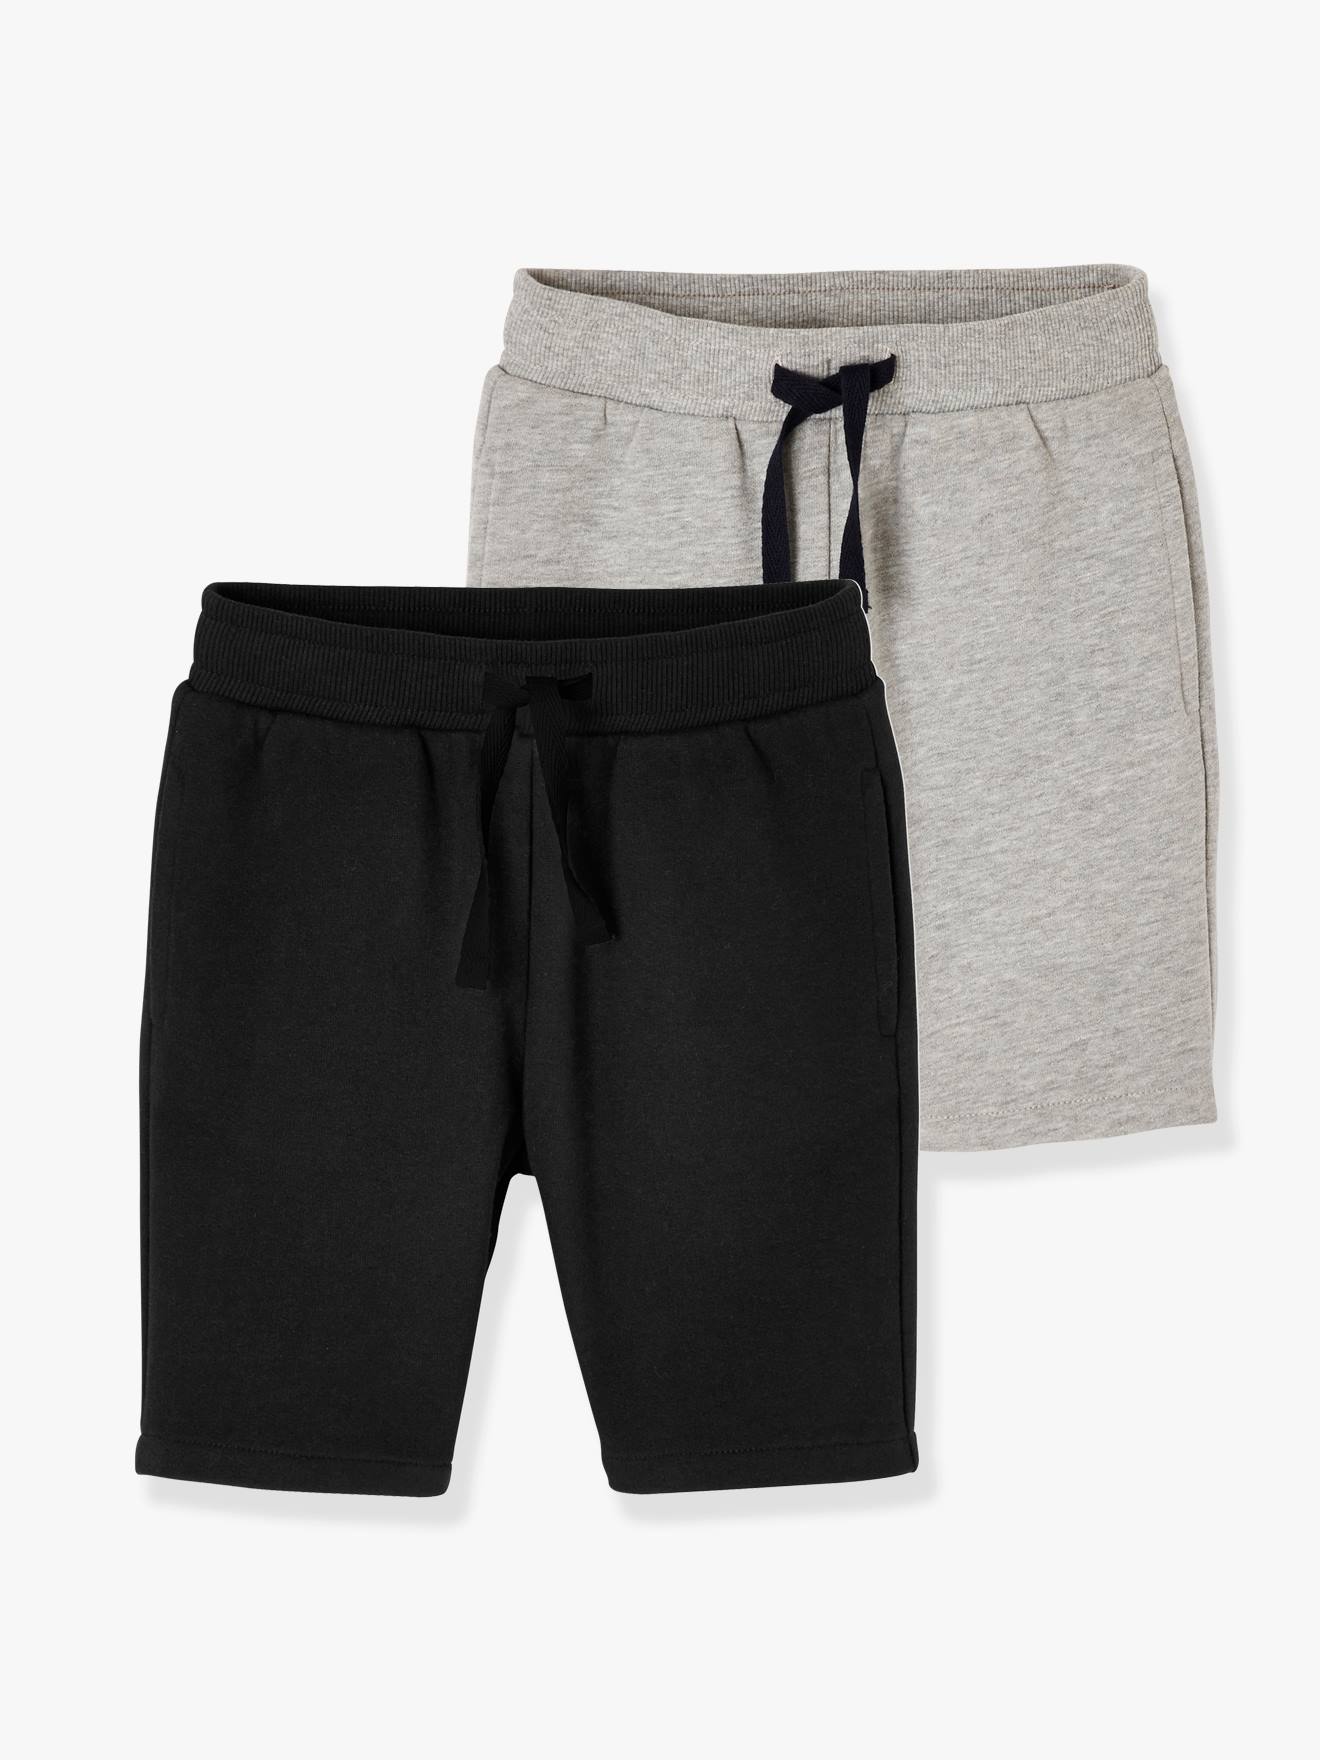 Pack of 2 Fleece Bermuda Shorts for Boys black